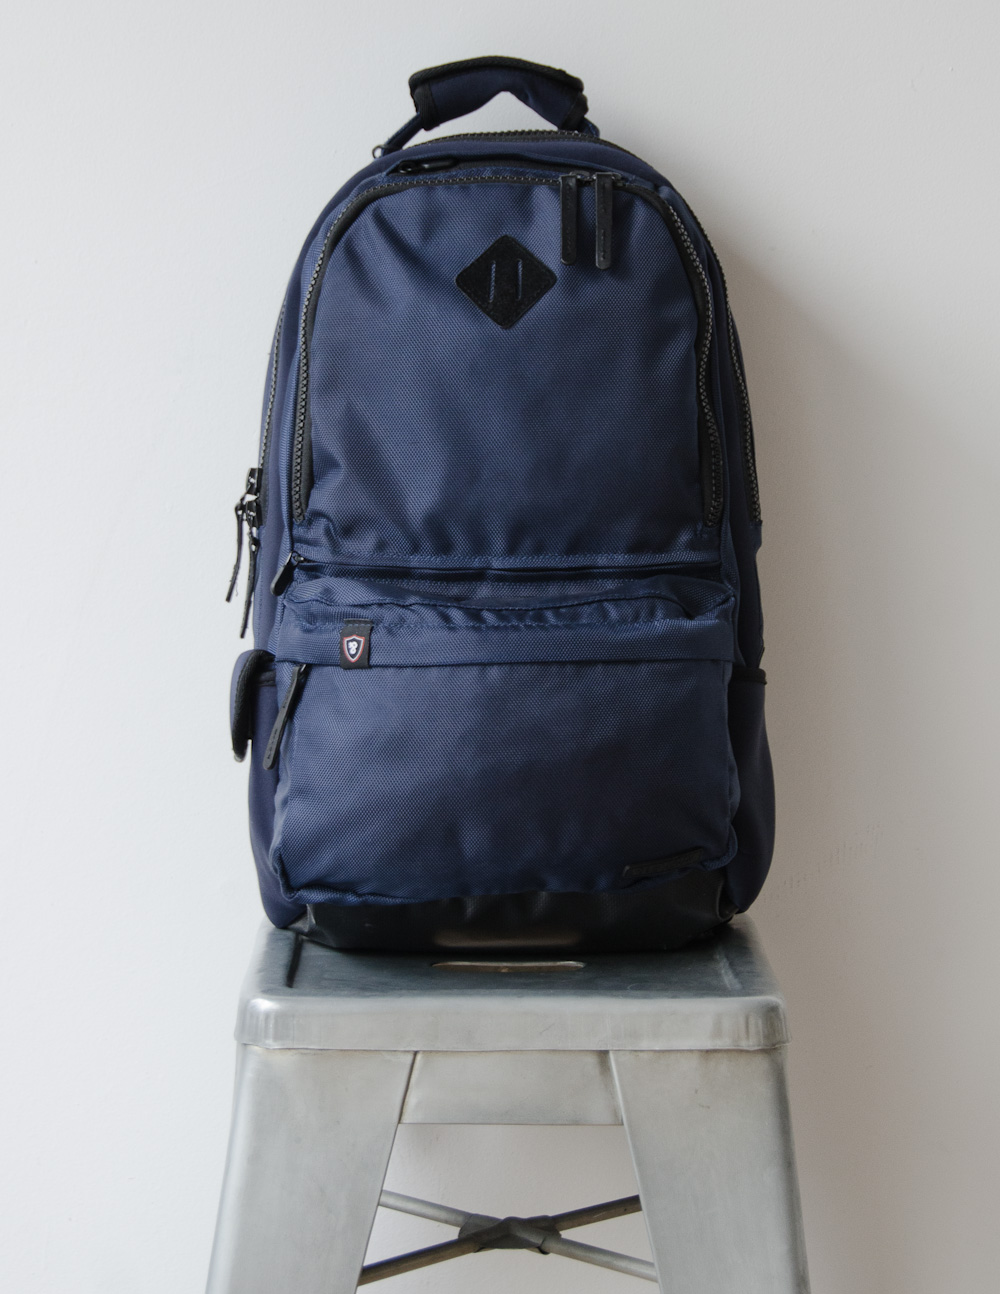 premium-picks-backpacks-3.jpg